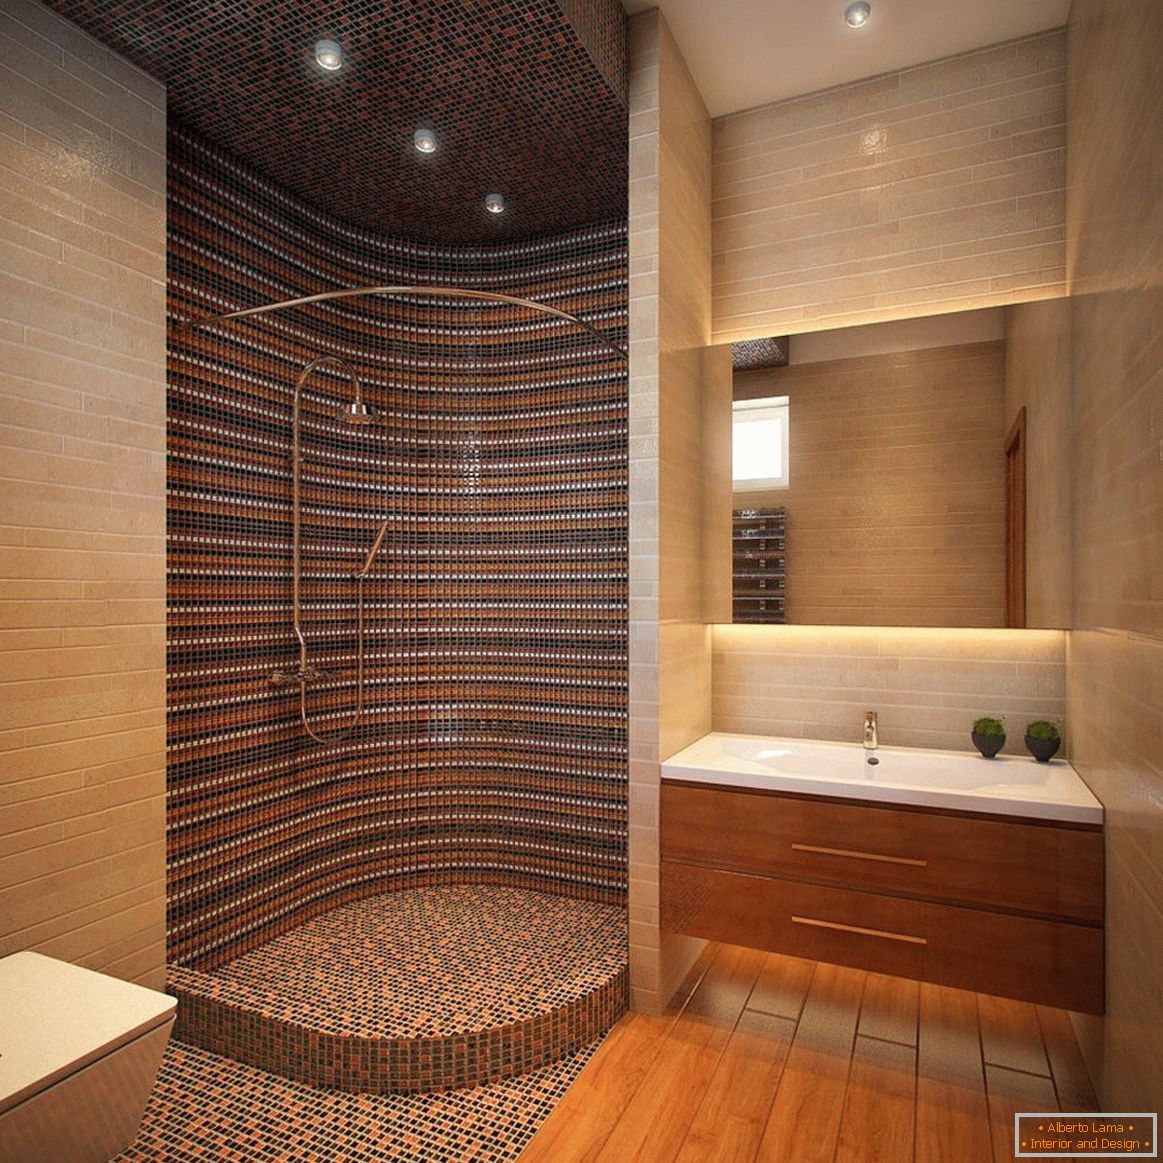 Decoração de cabine de duche com mosaico